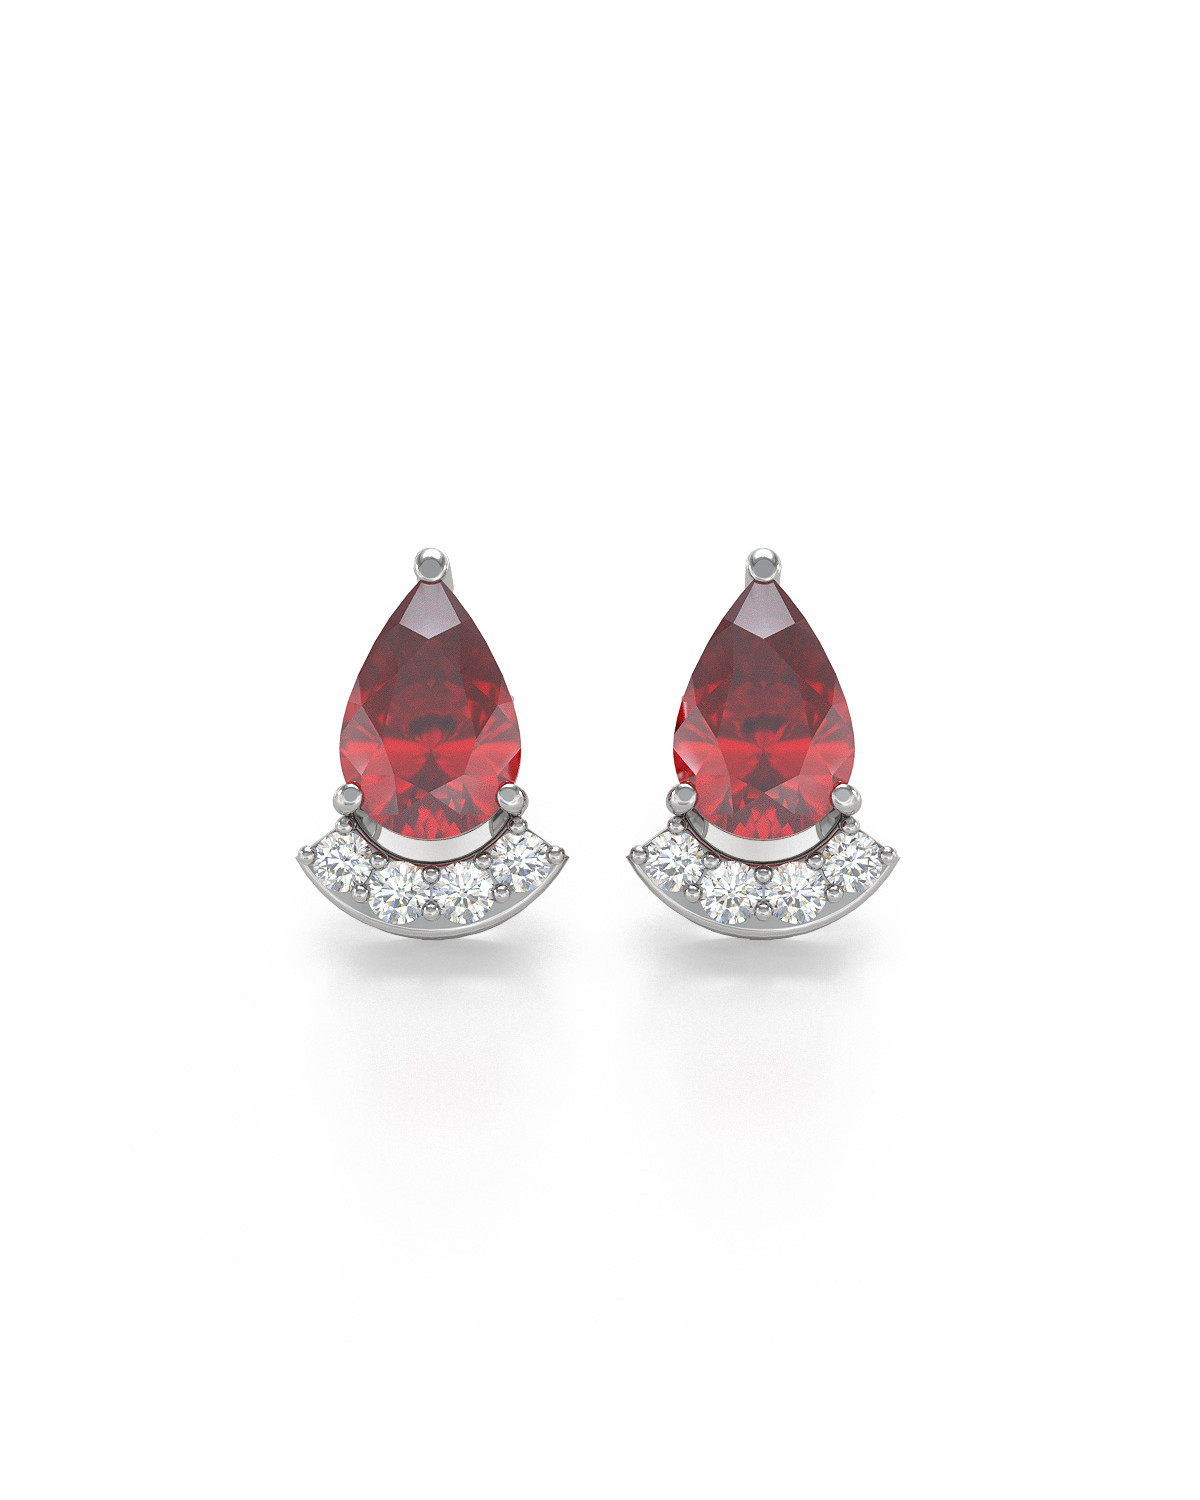 Boucles d'oreille Or Blanc Rubis forme Poire et Diamants 1.4grs